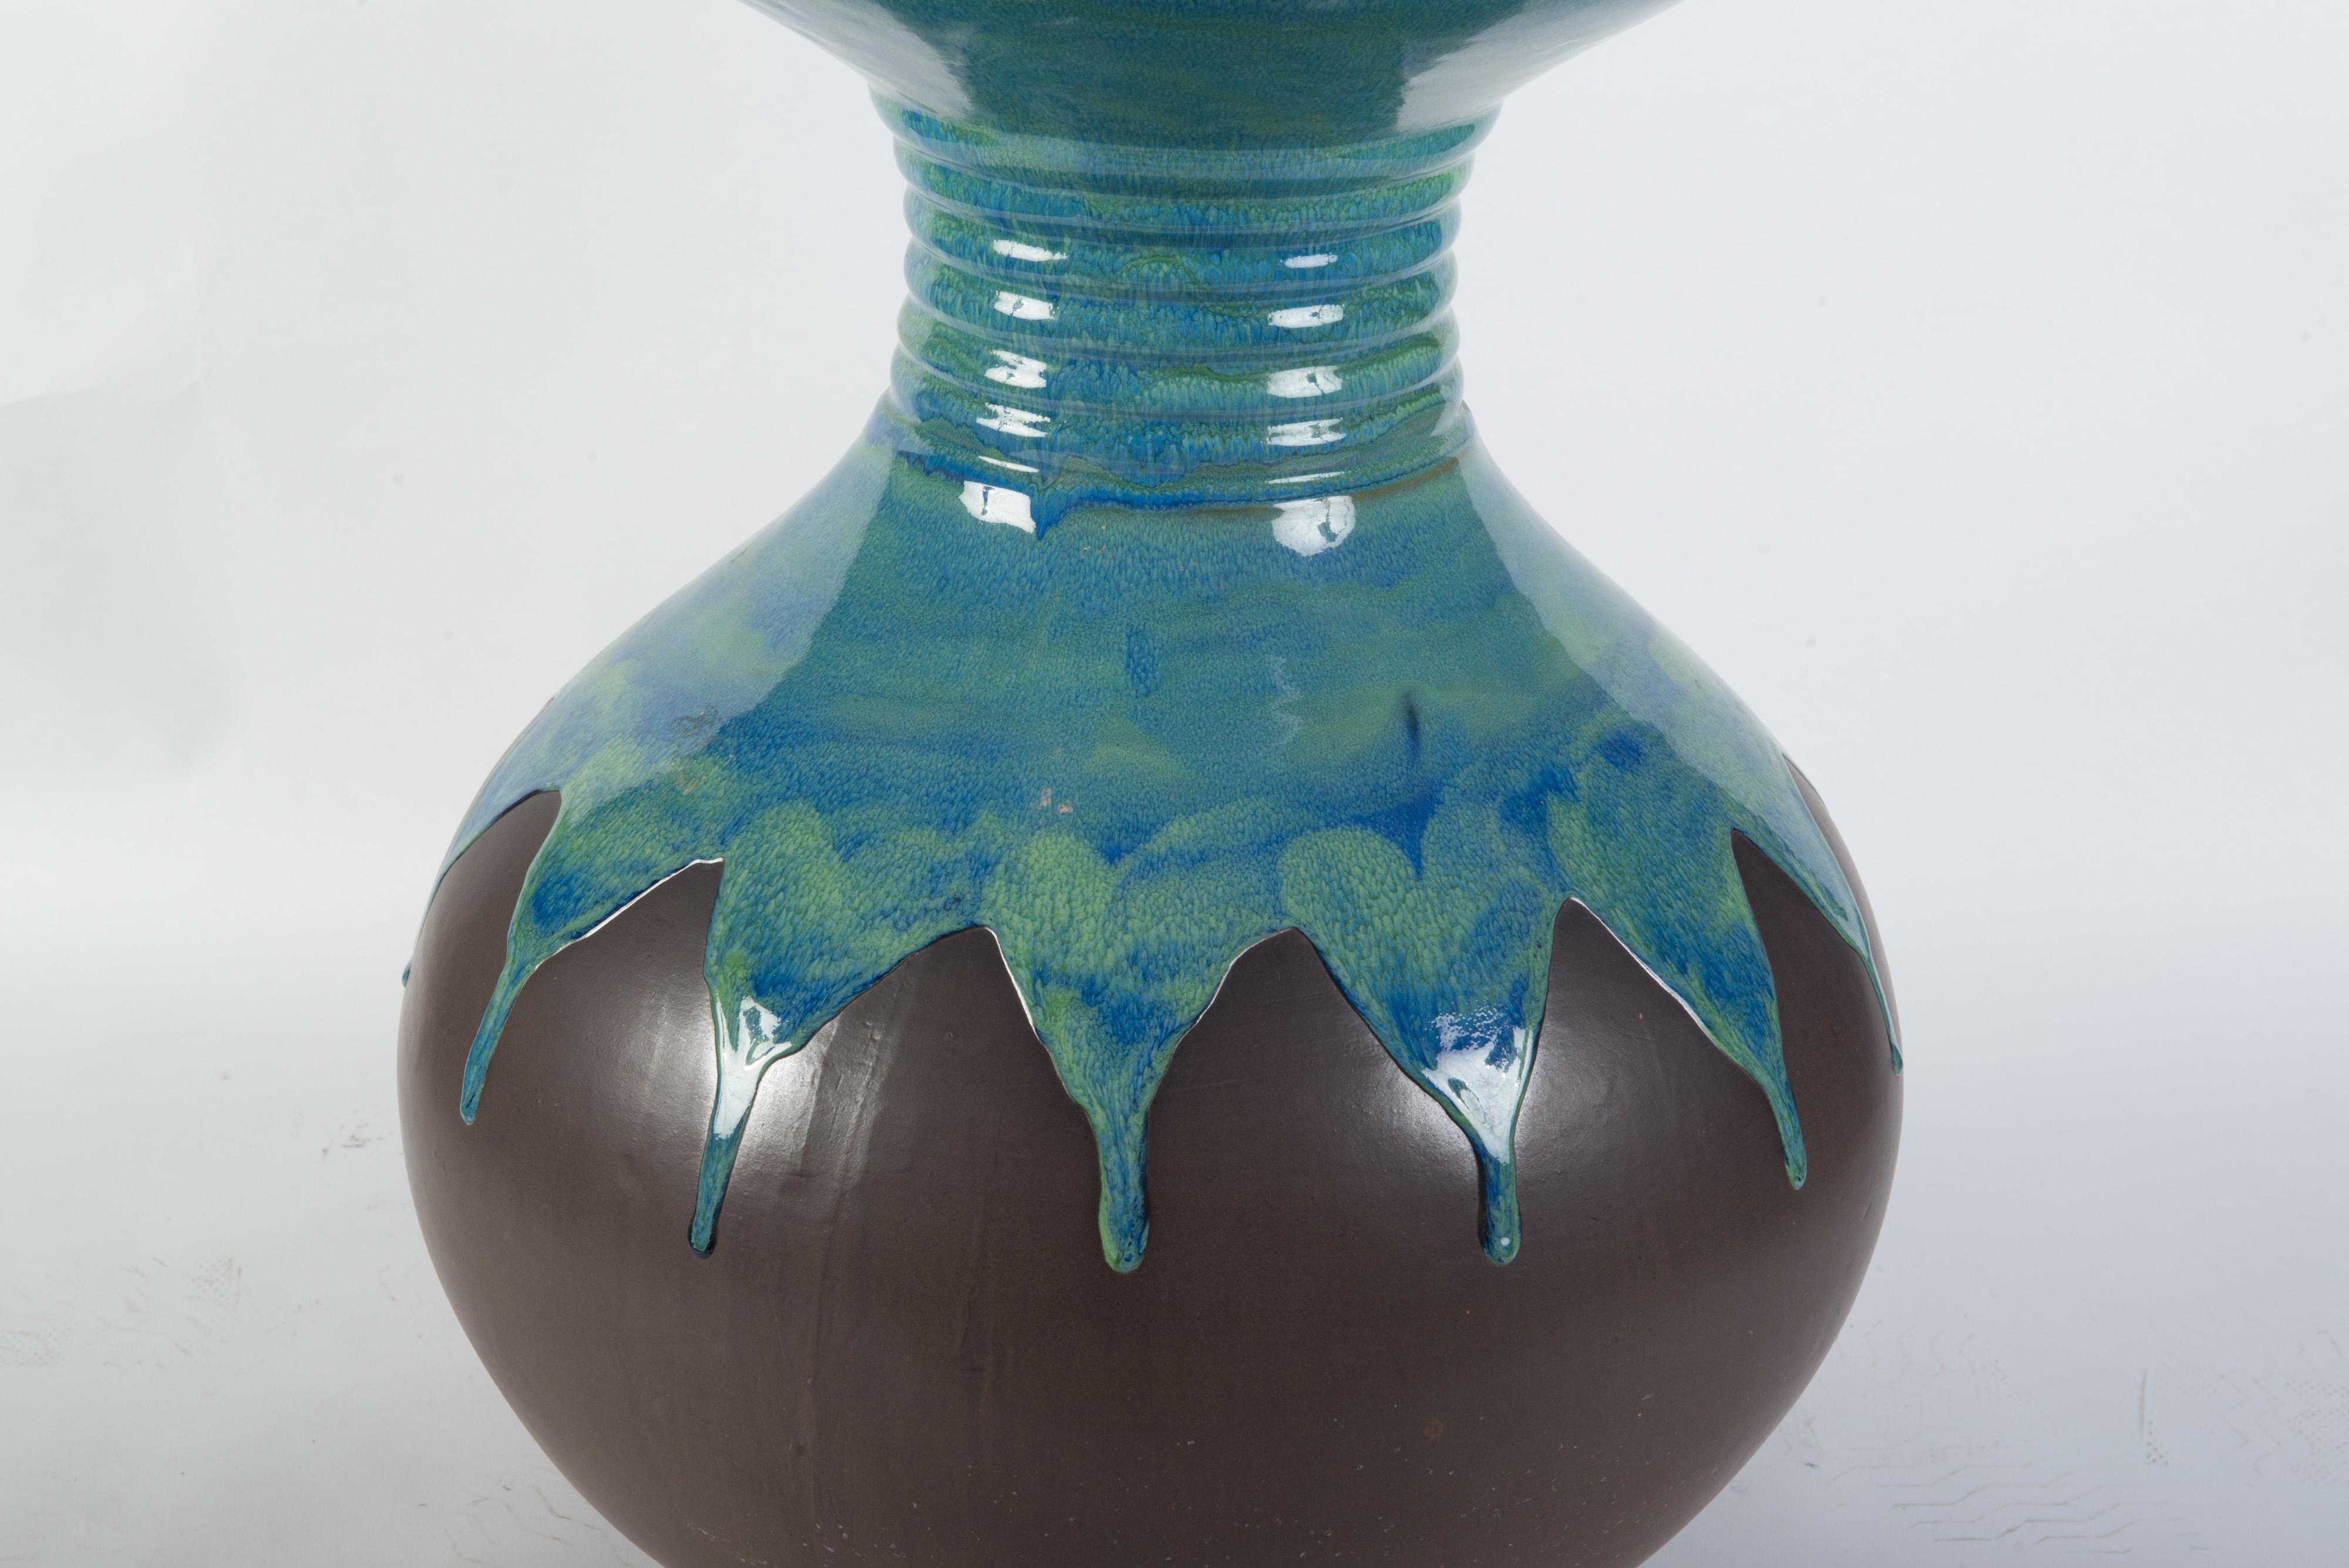 Große Keramikvase mit türkisfarbener Glasur und brauner, matter Oberfläche.